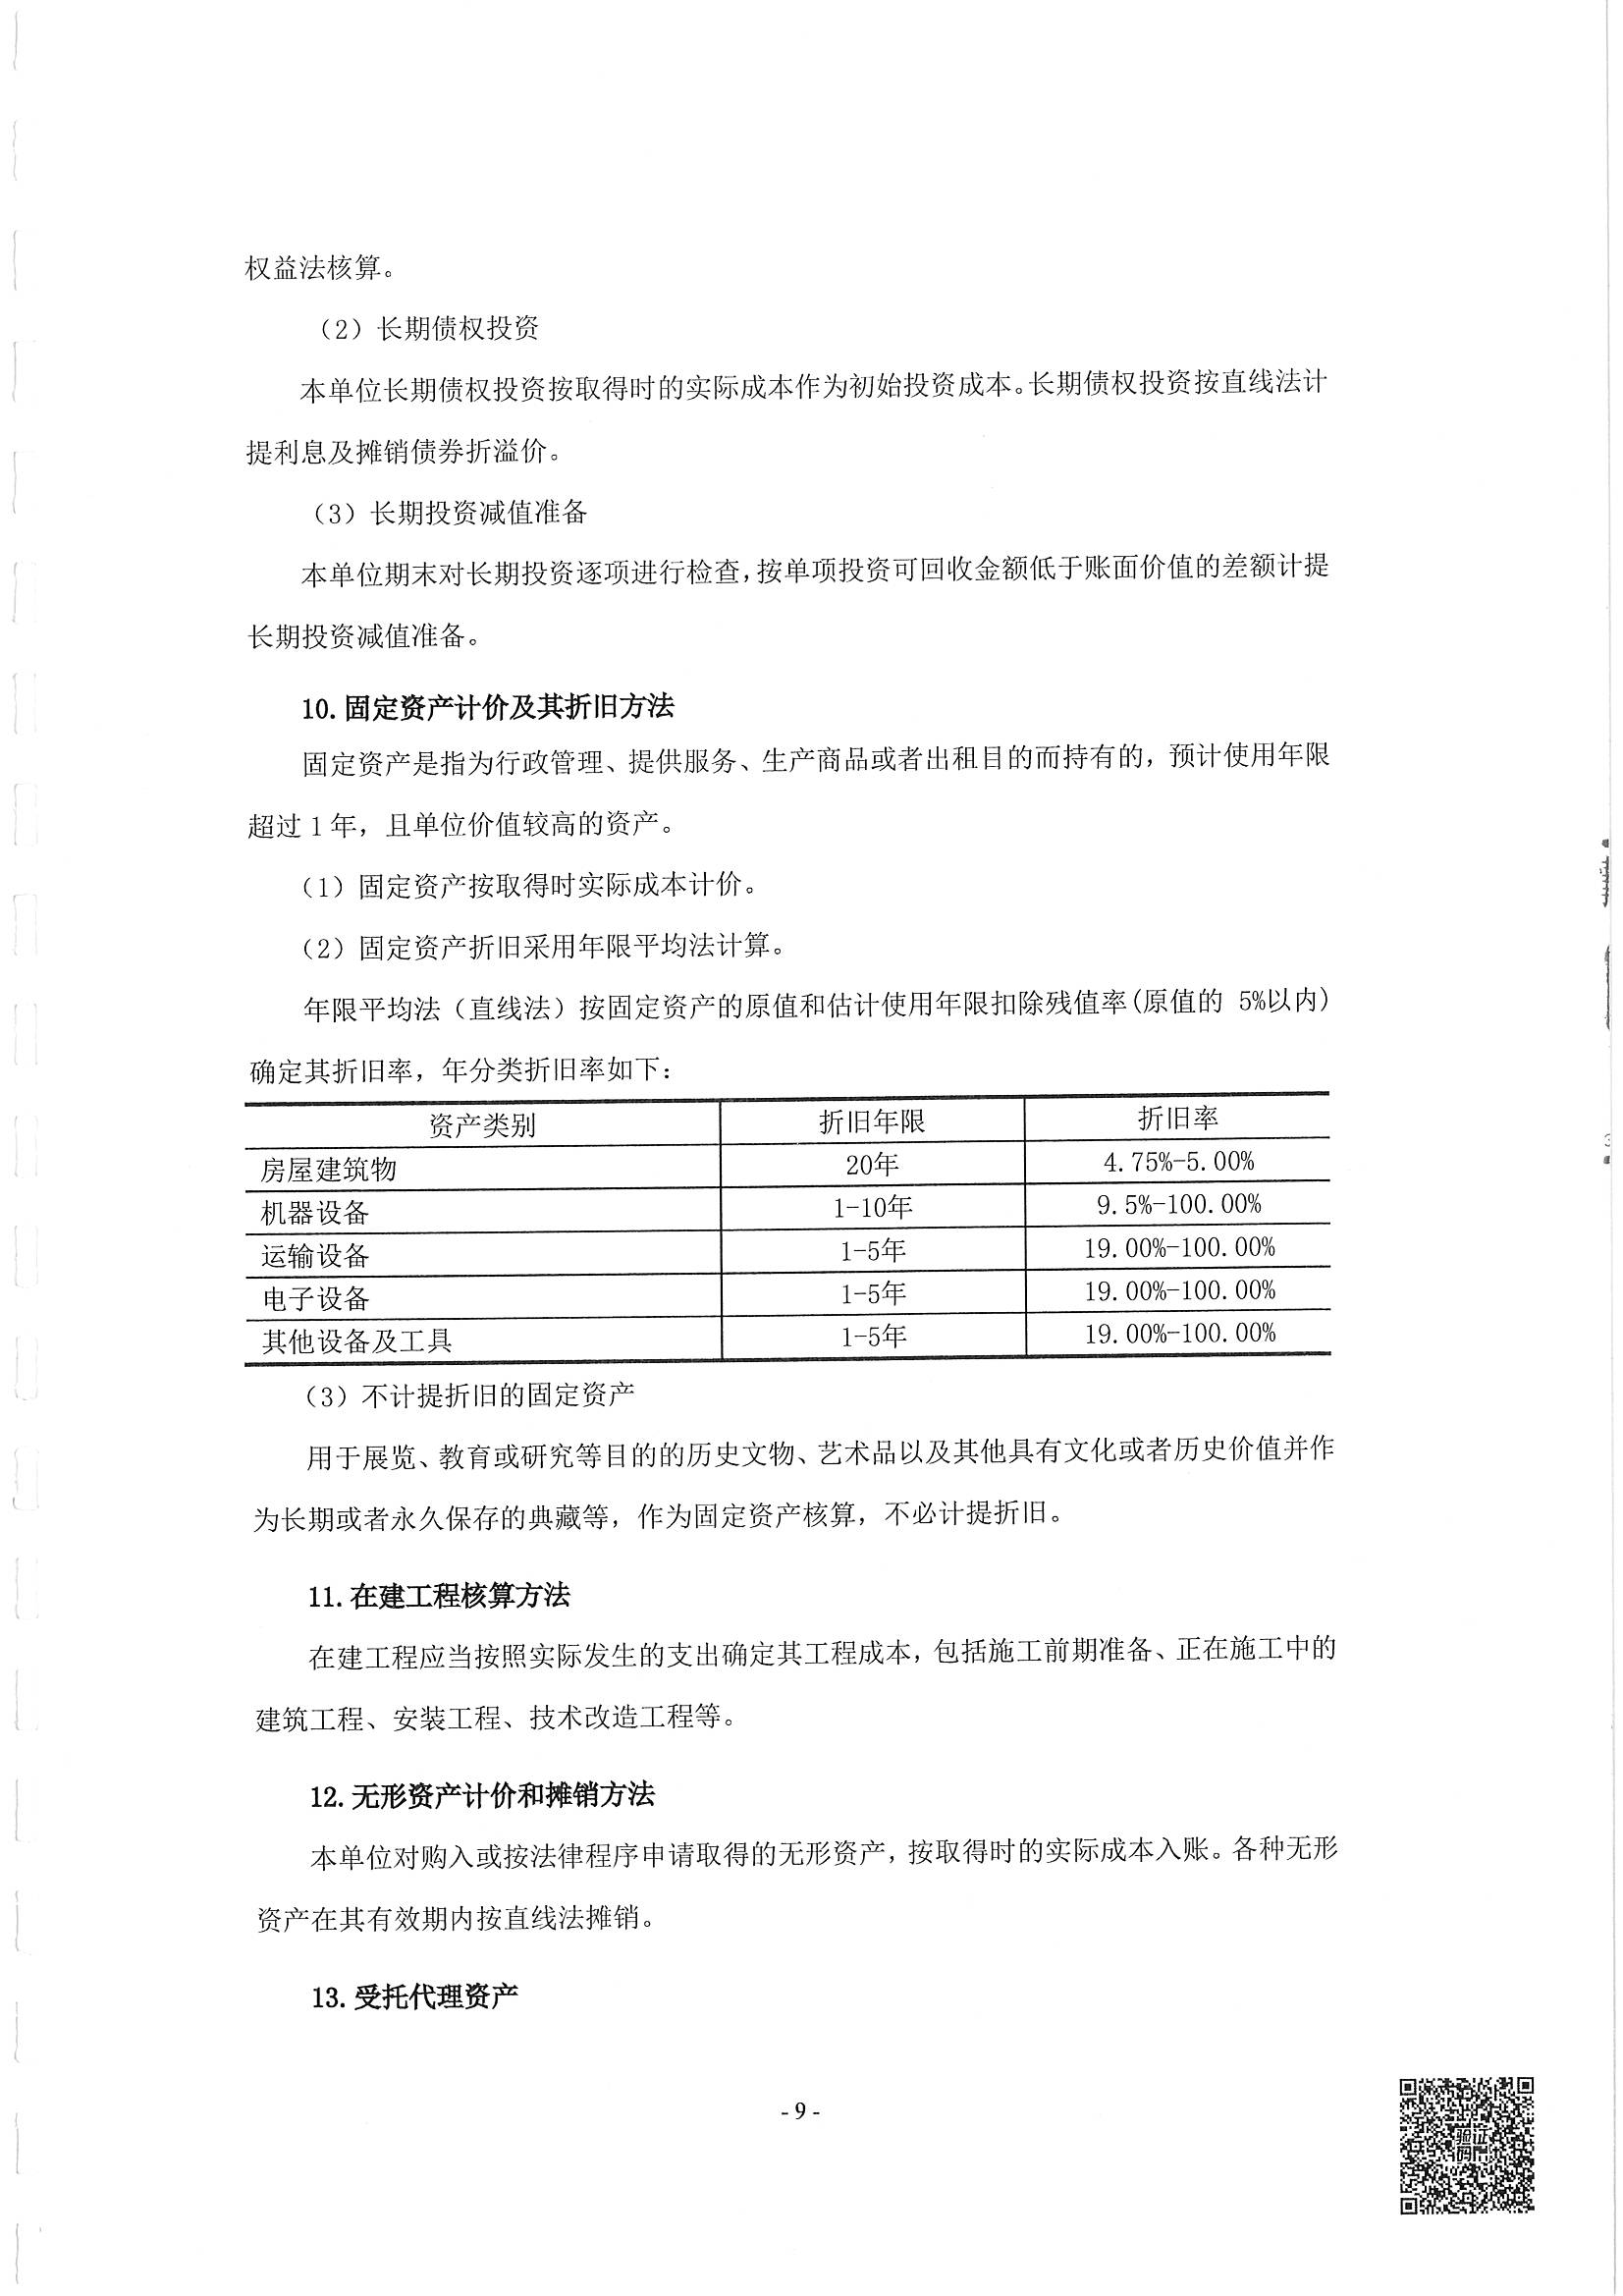 2022法泽社会工作服务中心财务审计_页面_09.jpg